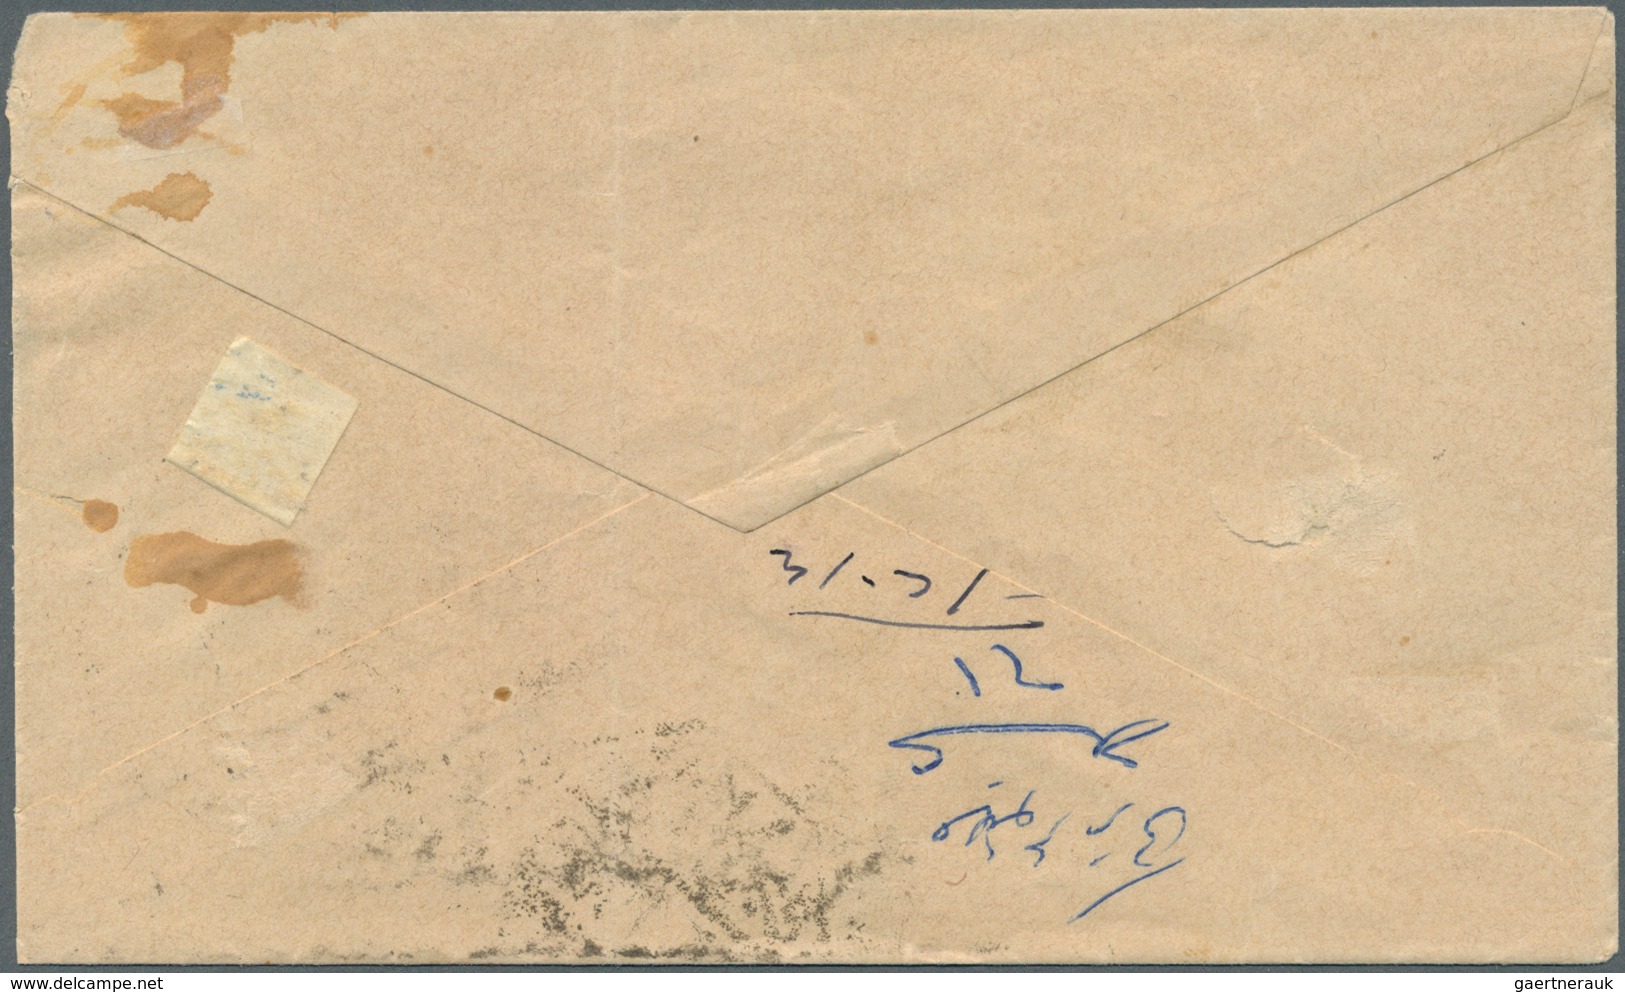 Saudi-Arabien - Stempel: 1916, Stampless Cover Tied By "MEKKE EL MUKEREME - 26/2/17- 1335" Cds. (Uex - Saudi Arabia